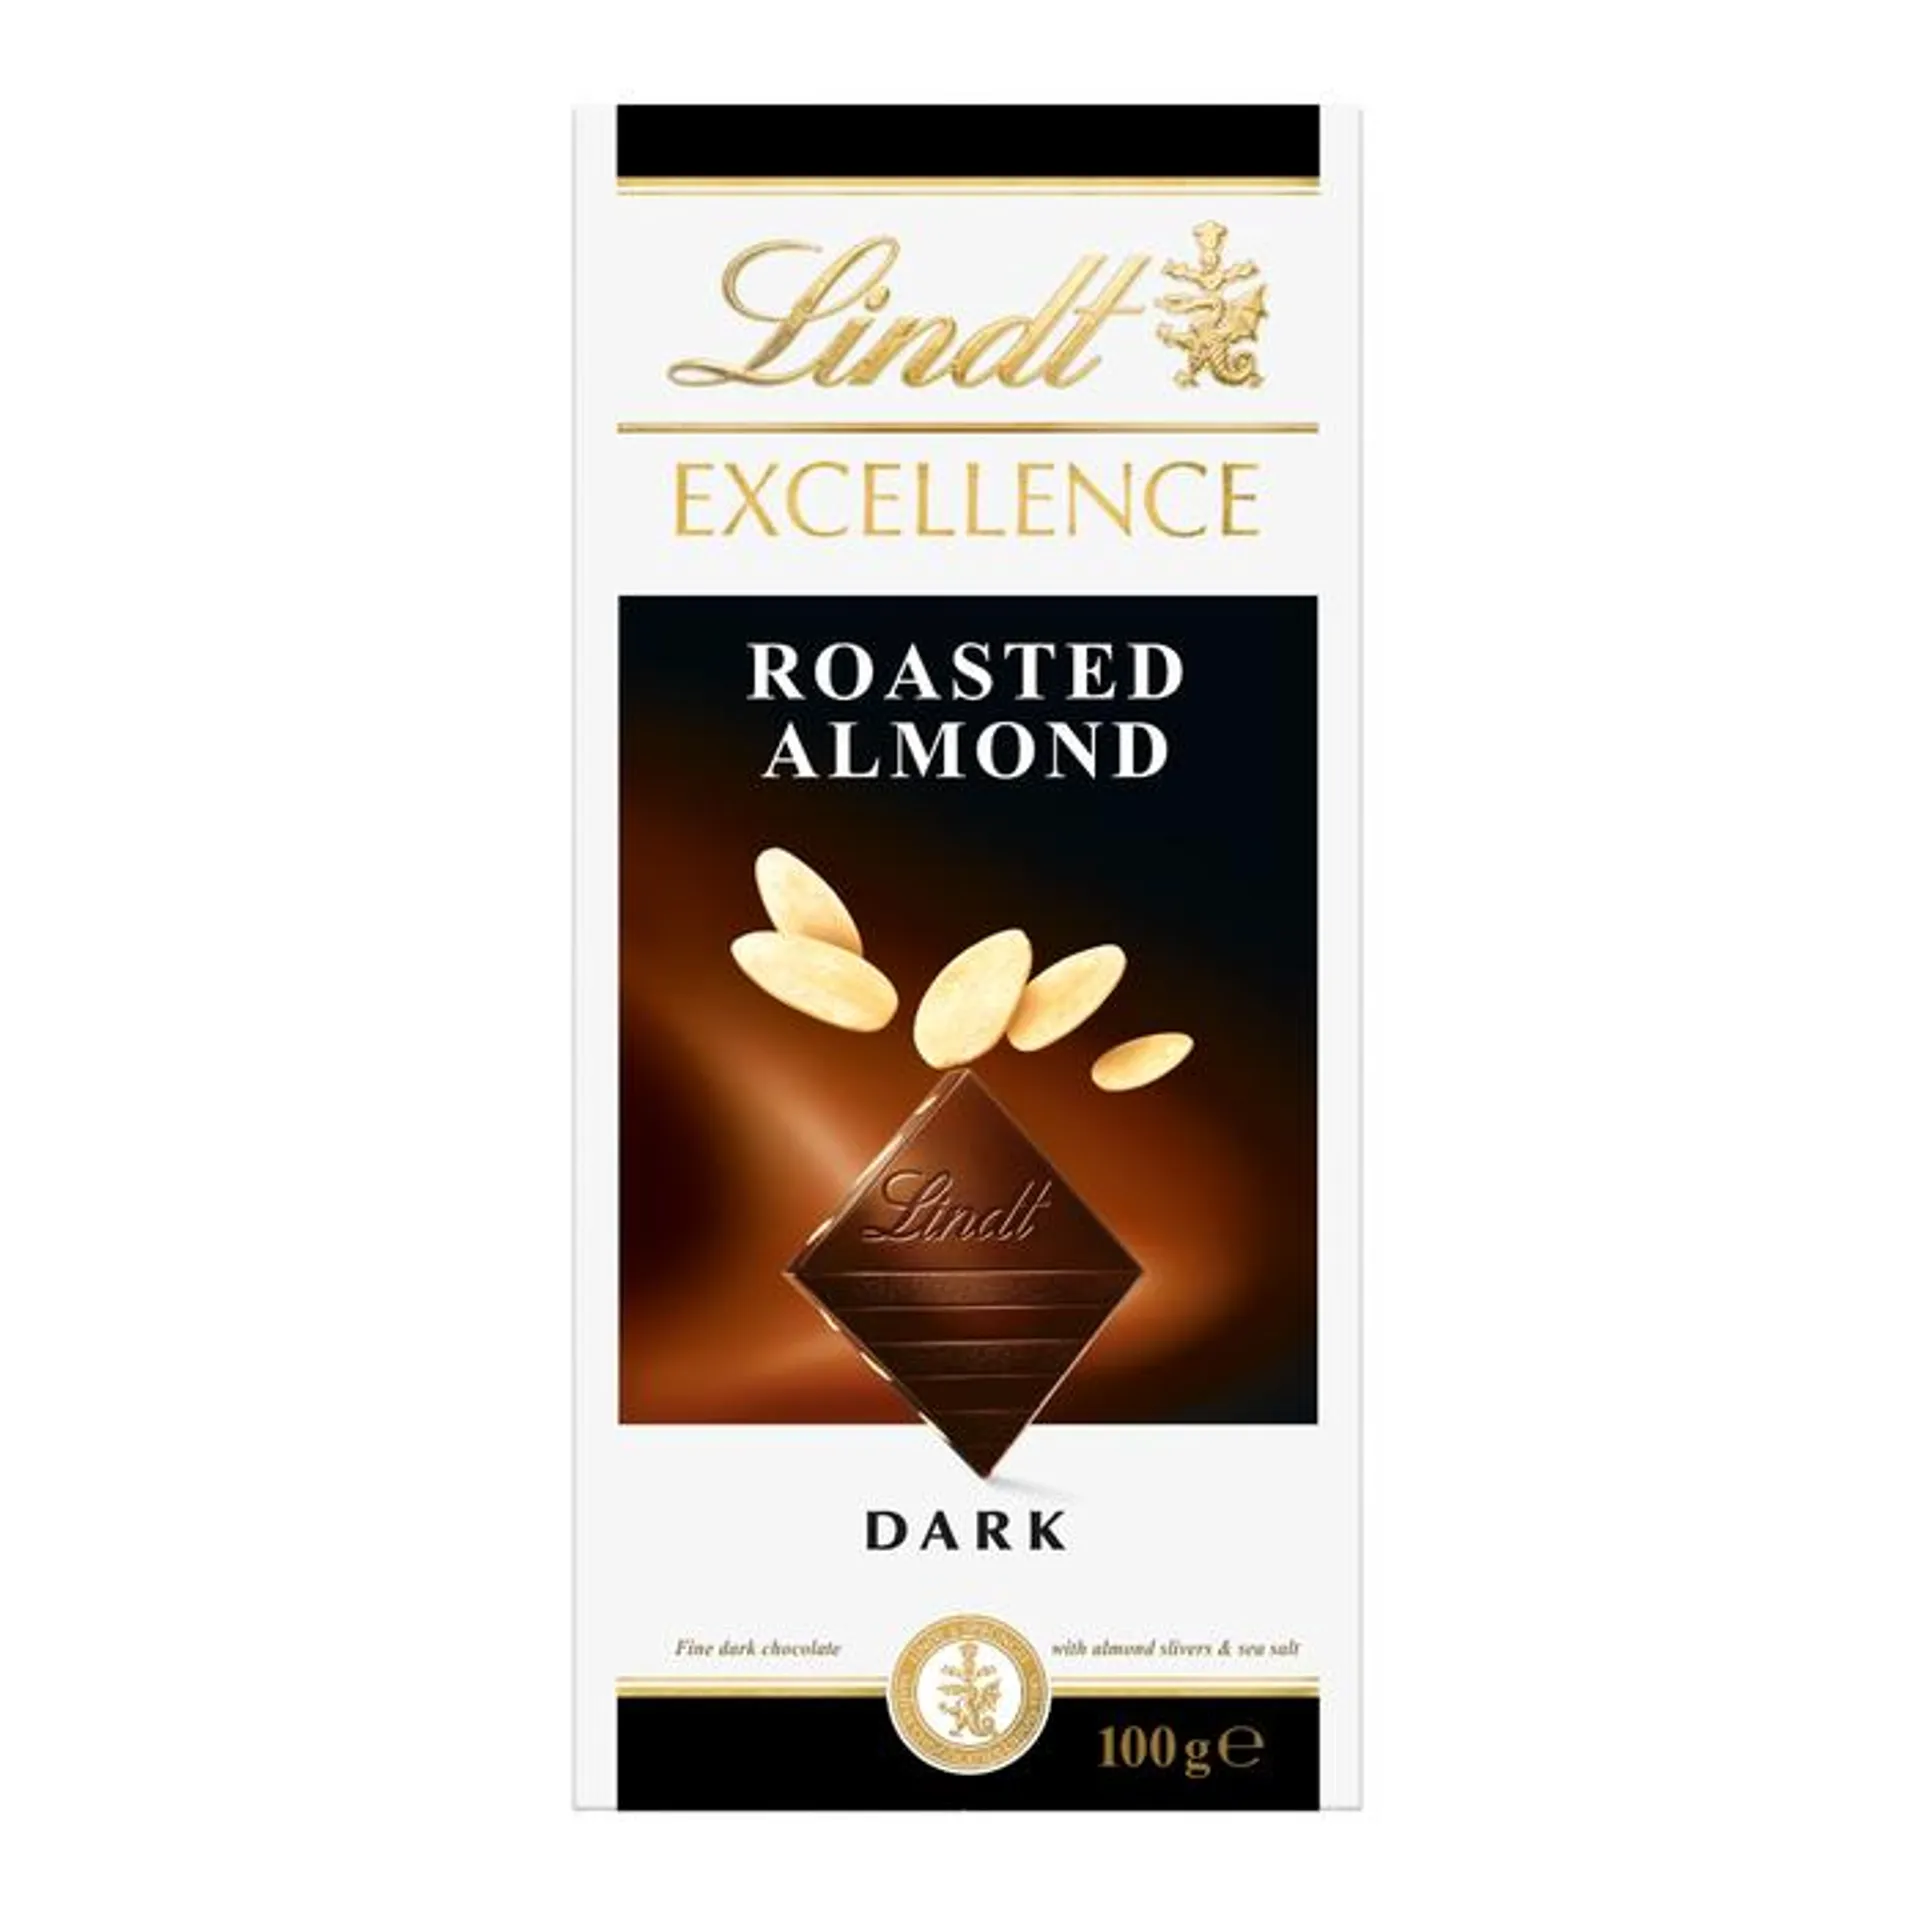 Tableta de Chocolate Excellence Almendras Tostadas100g - Lindt